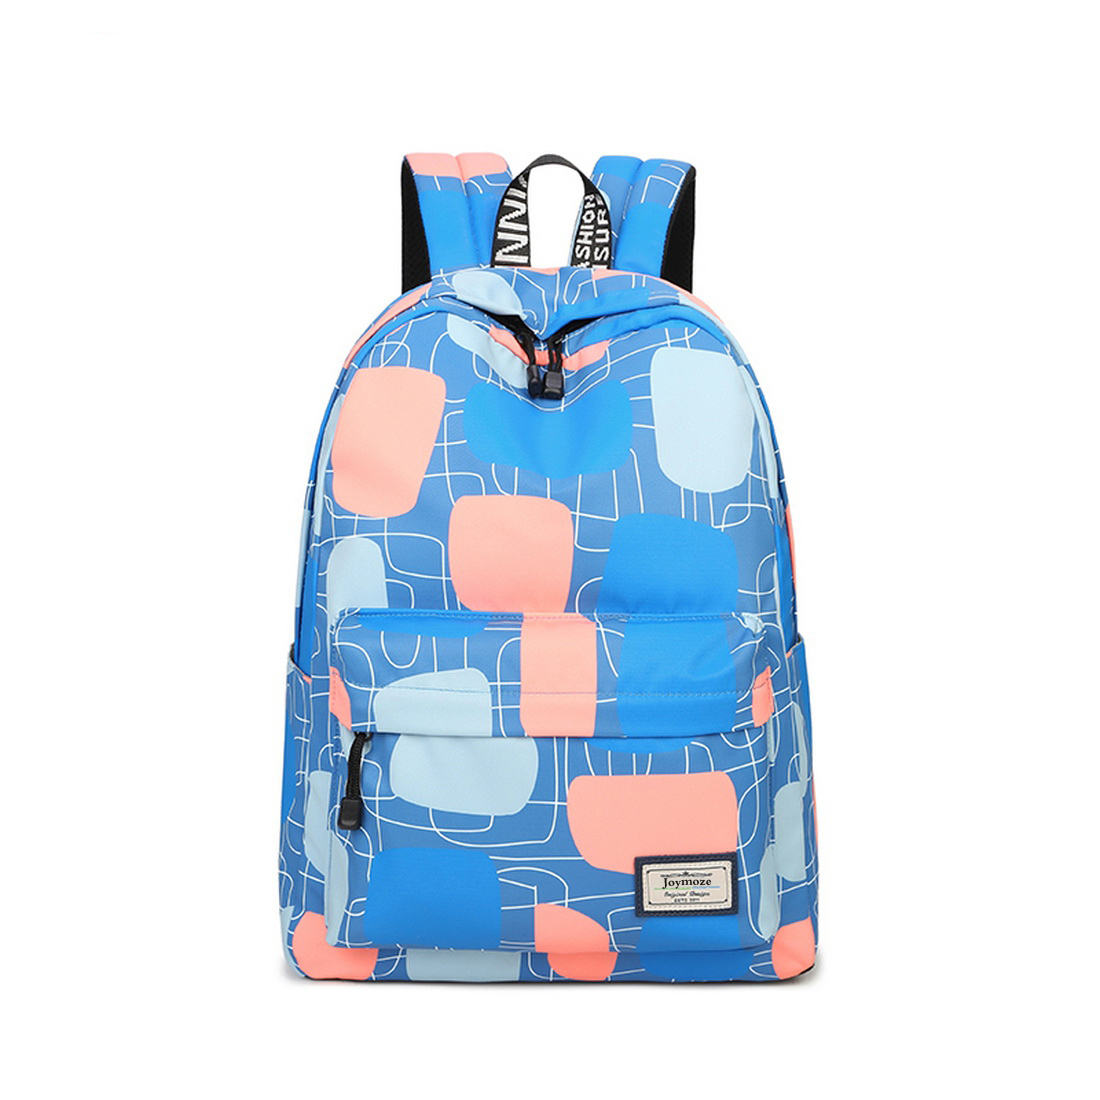 Joymoze Waterproof School Backpack for Girls Middle School Cute Bookbag Daypack for Women Quadrel 843